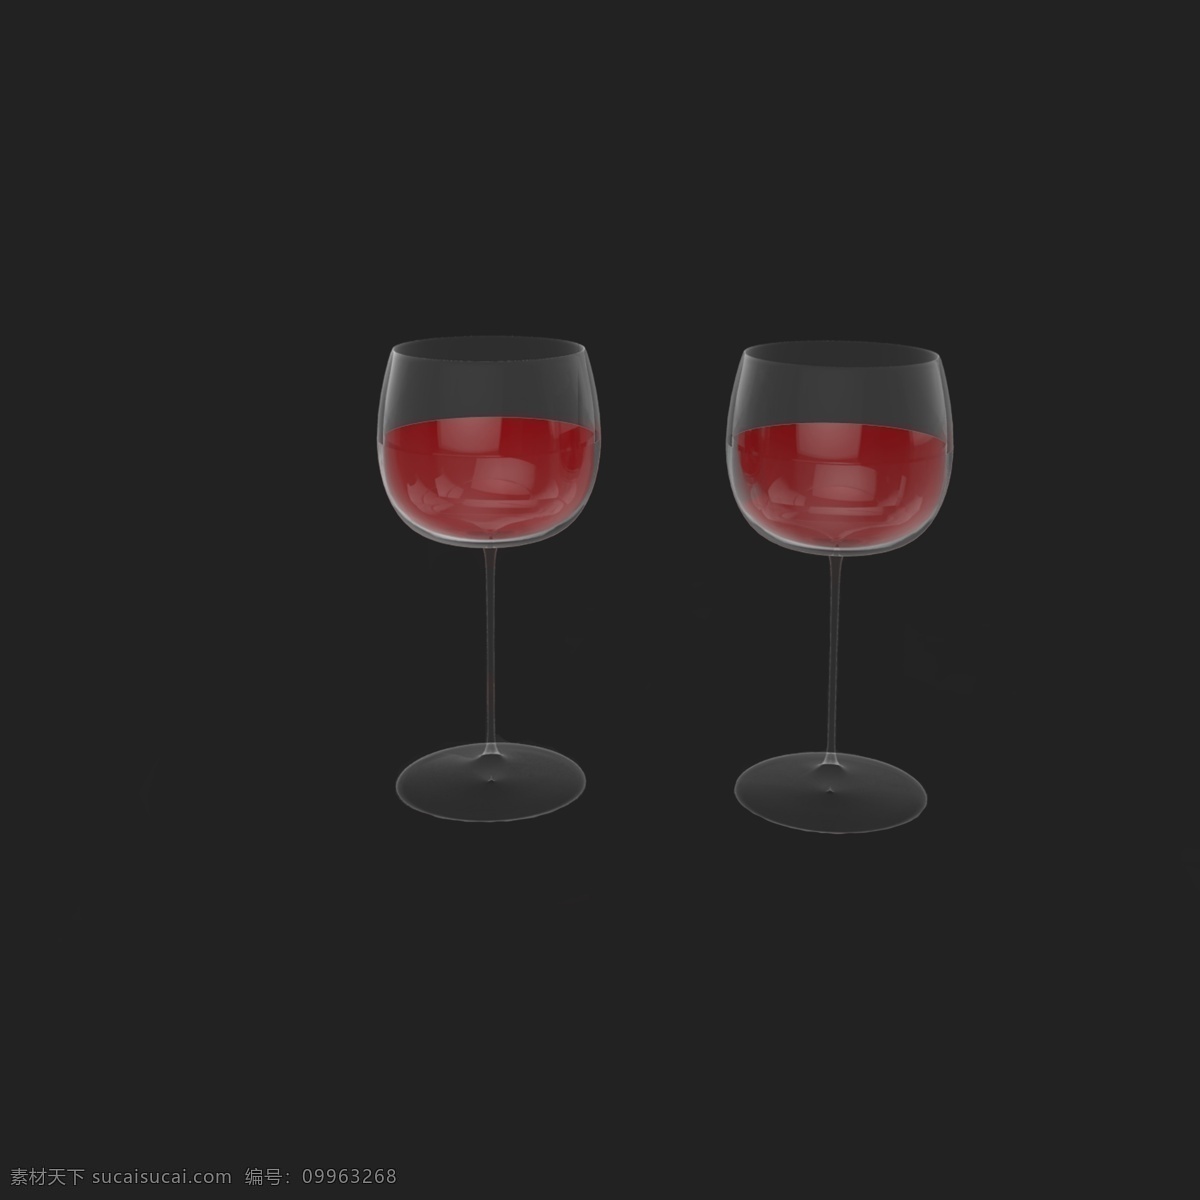 两 杯 红酒 免 抠 手绘红酒 情人节 女王节 红酒手绘 收回红酒酒杯 酒杯图案 酒杯效果图 红酒杯子